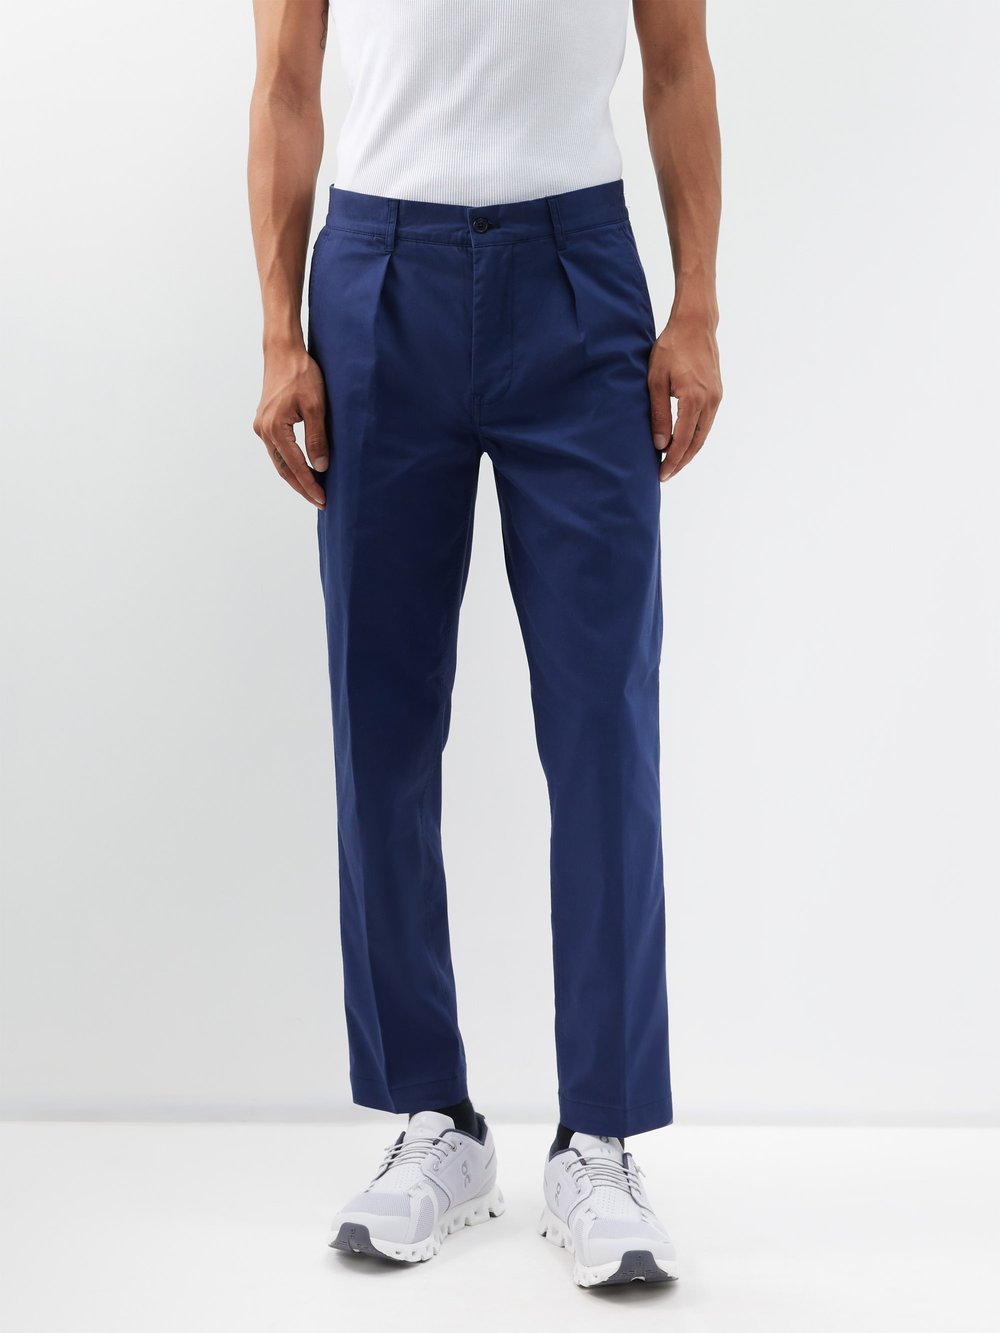 Плиссированные брюки чинос для гольфа из смесового хлопка Polo Ralph Lauren, синий профессиональные красные и синие капельные мячи для гольфа 1 дюжина